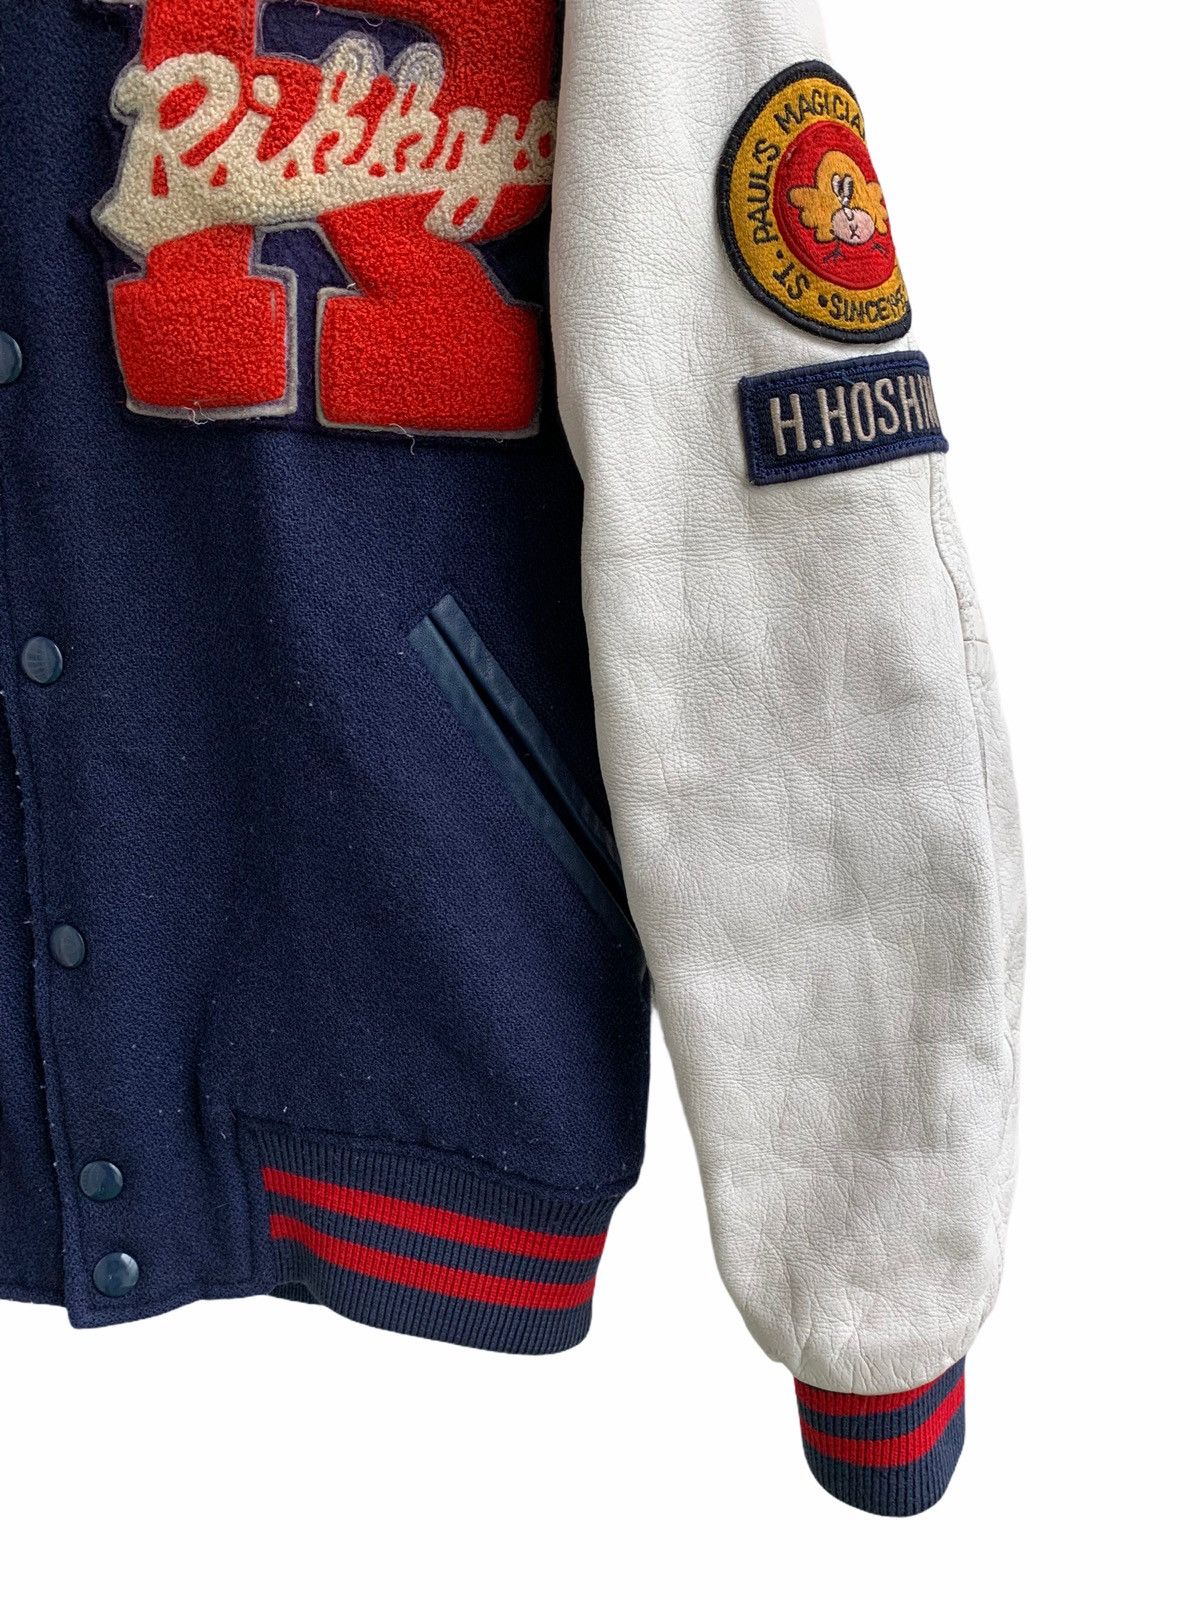 NBA Vintage Wool Varsity Leather Sleeves Jacket Size US S / EU 44-46 / 1 - 3 Thumbnail